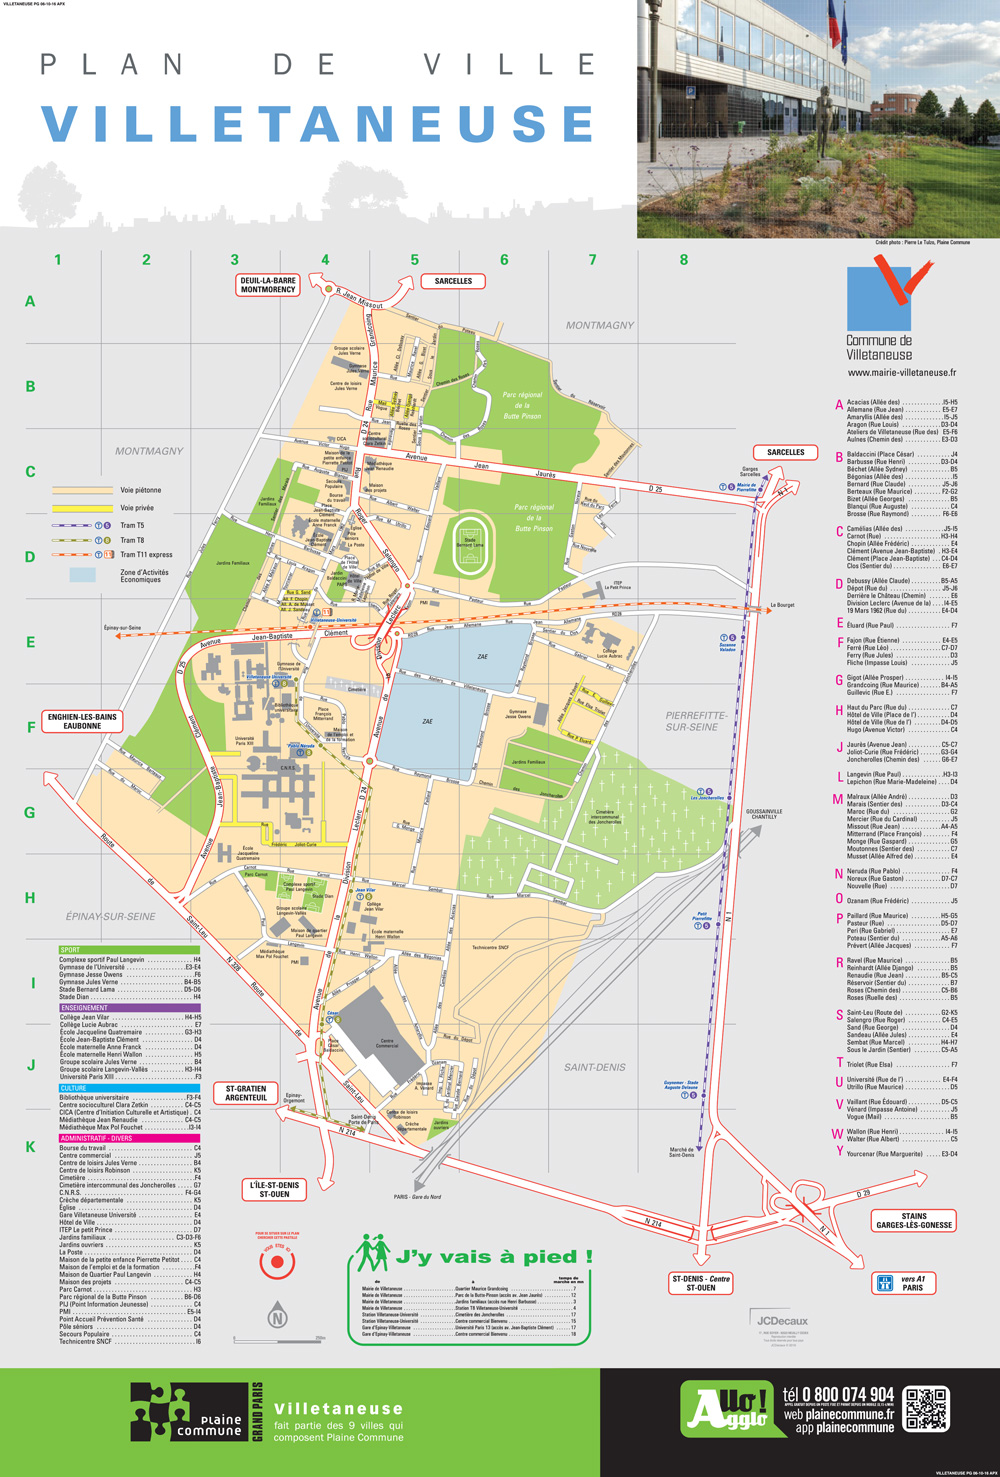 Plan (2018) de la ville de Villetaneuse.